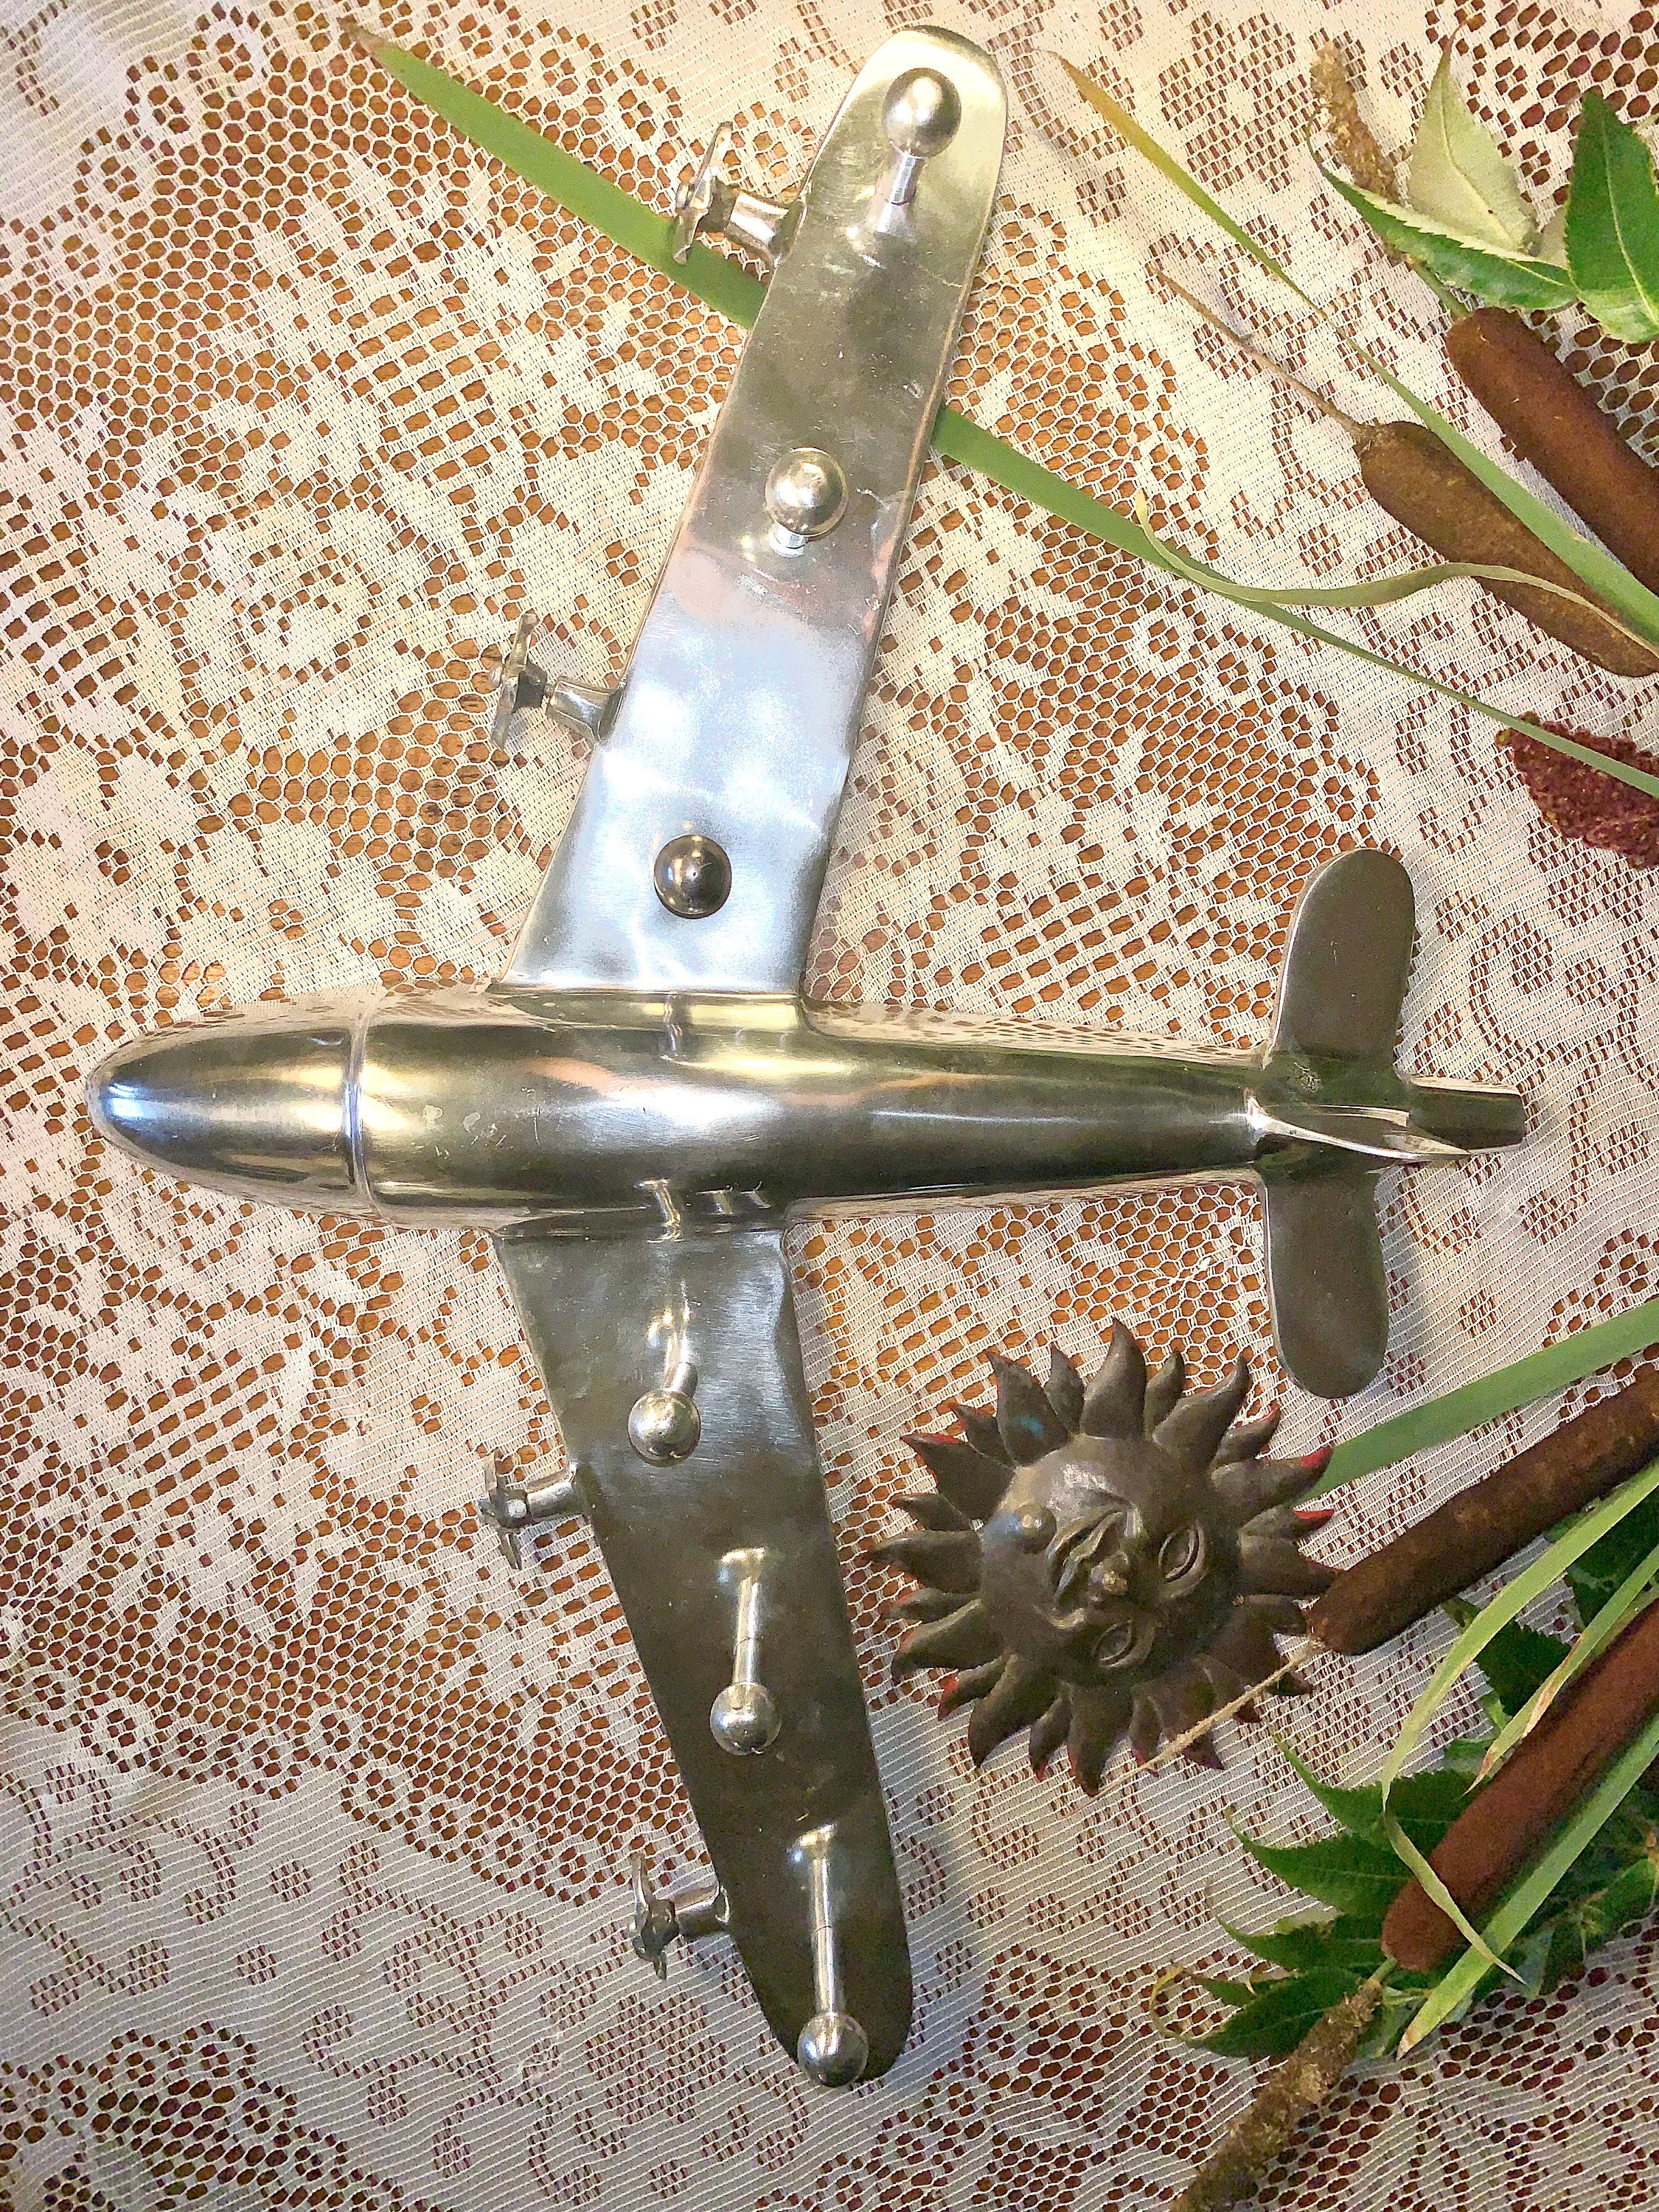 Circa 1940 English Large Polished Aluminum Clad Aviation Travel